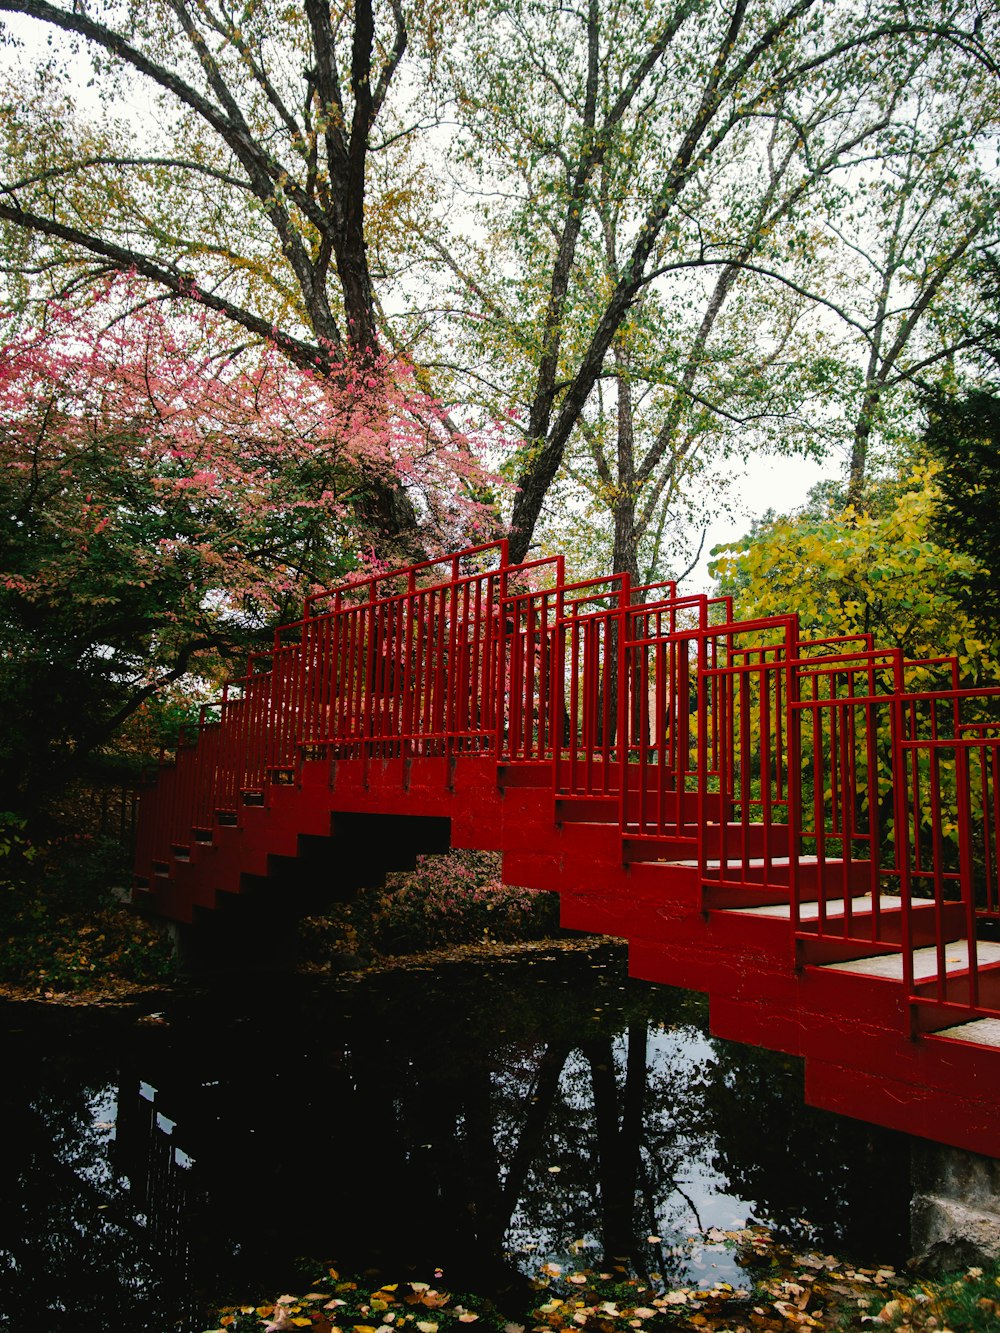 ponte vermelha sobre o rio cercada por árvores